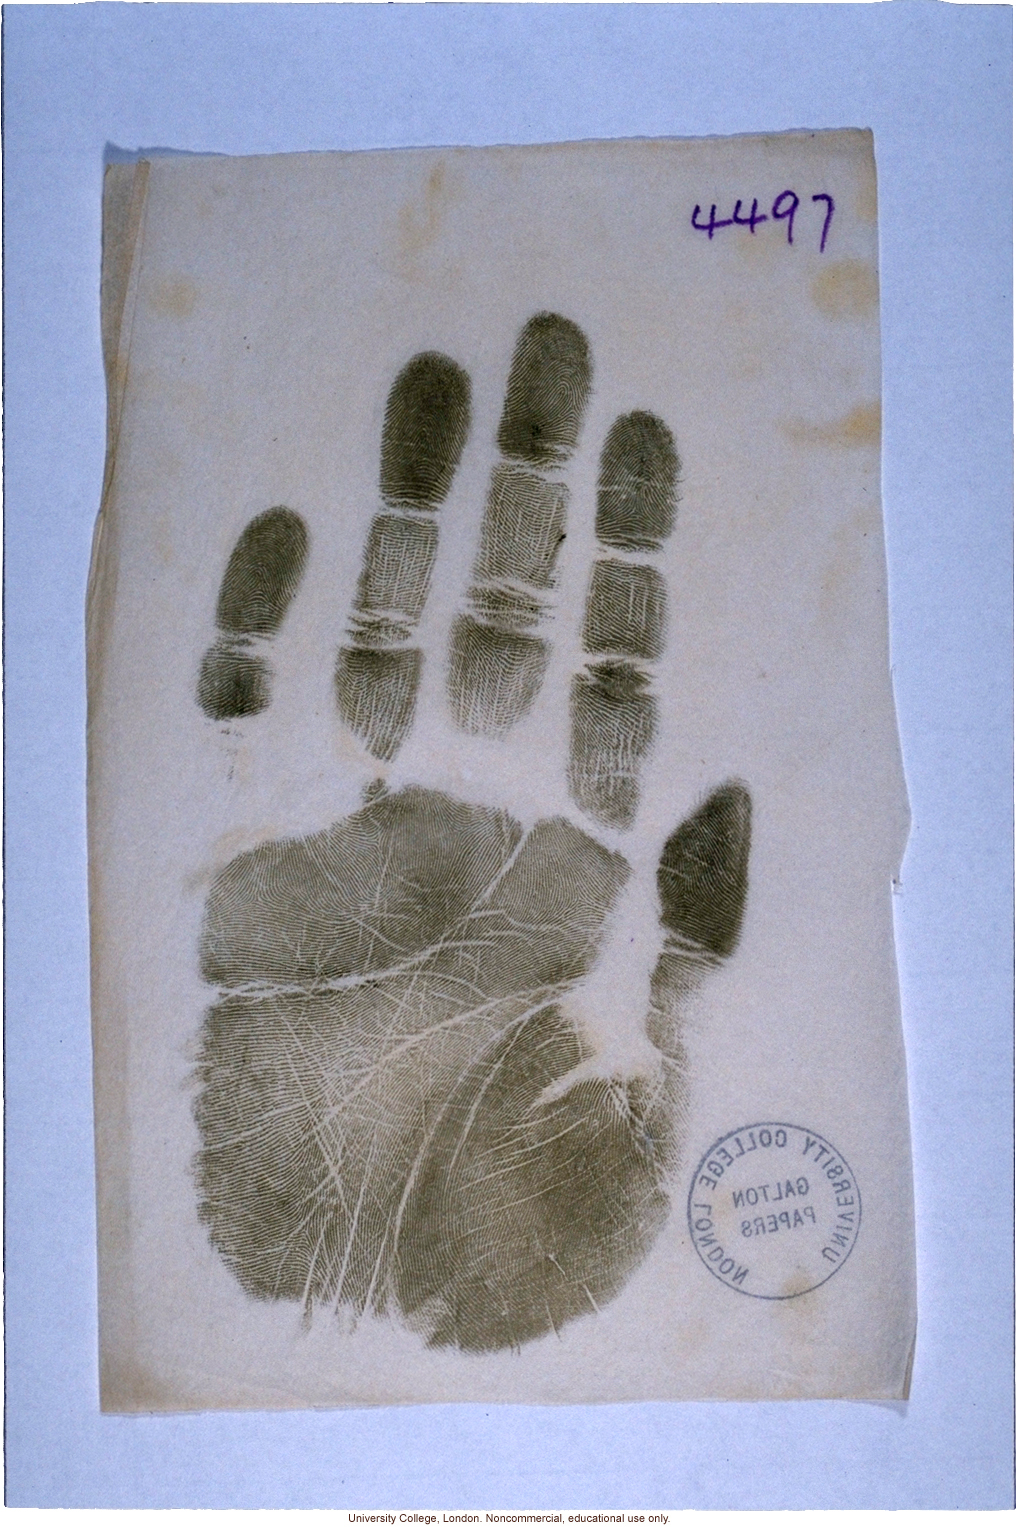 Handprint taken by Francis Galton